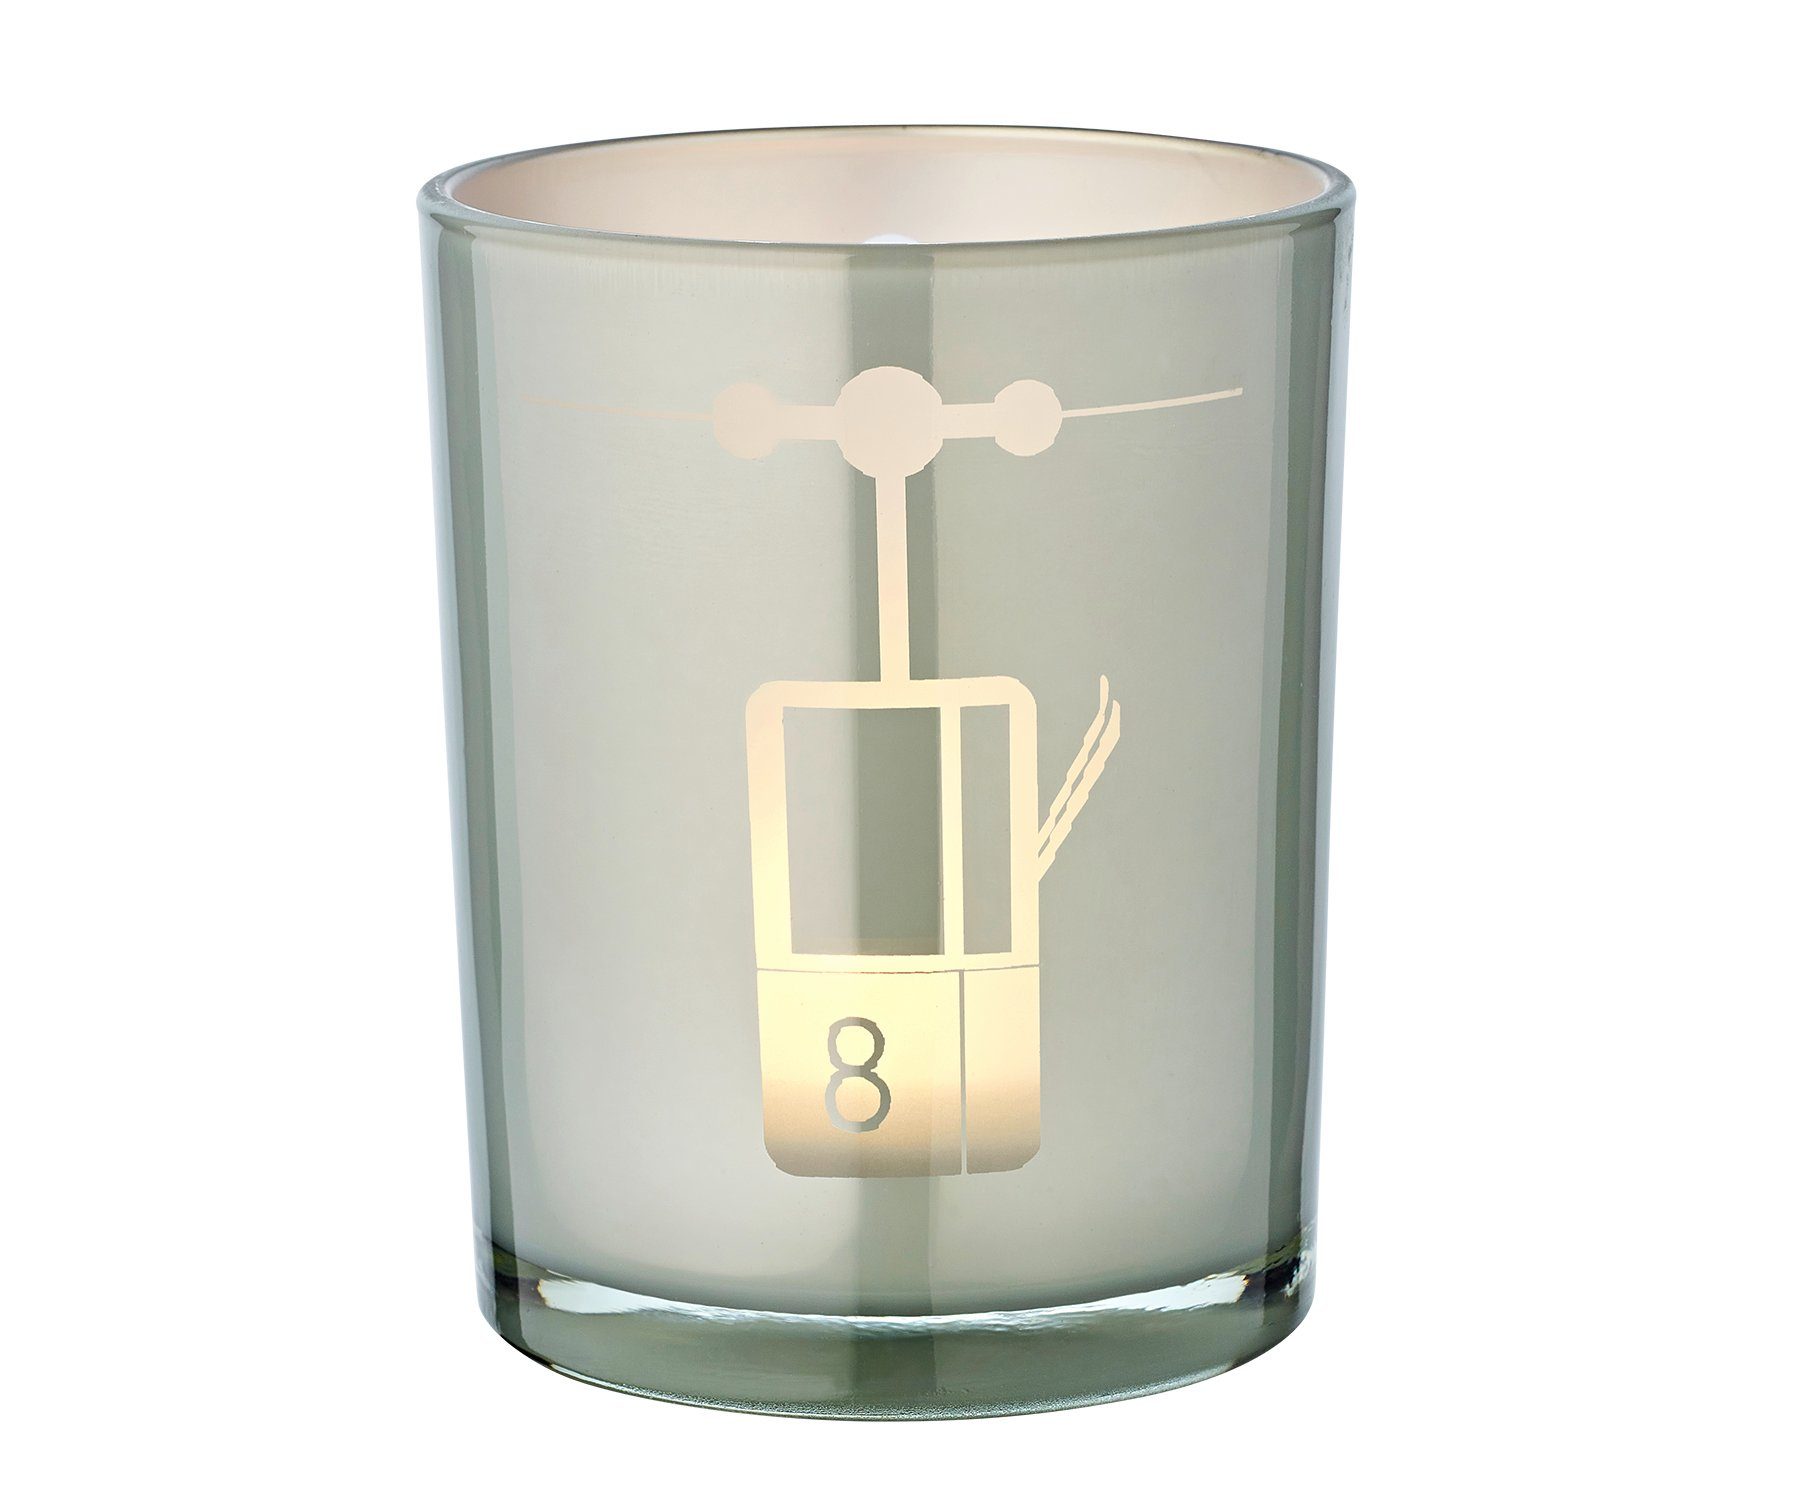 cm mit Lift, cm, Teelichtglas Teelichter, EDZARD Lift-Motiv für Ø Windlicht 13 Kerzenglas Windlicht, Höhe Grau-Weiß, 10 in